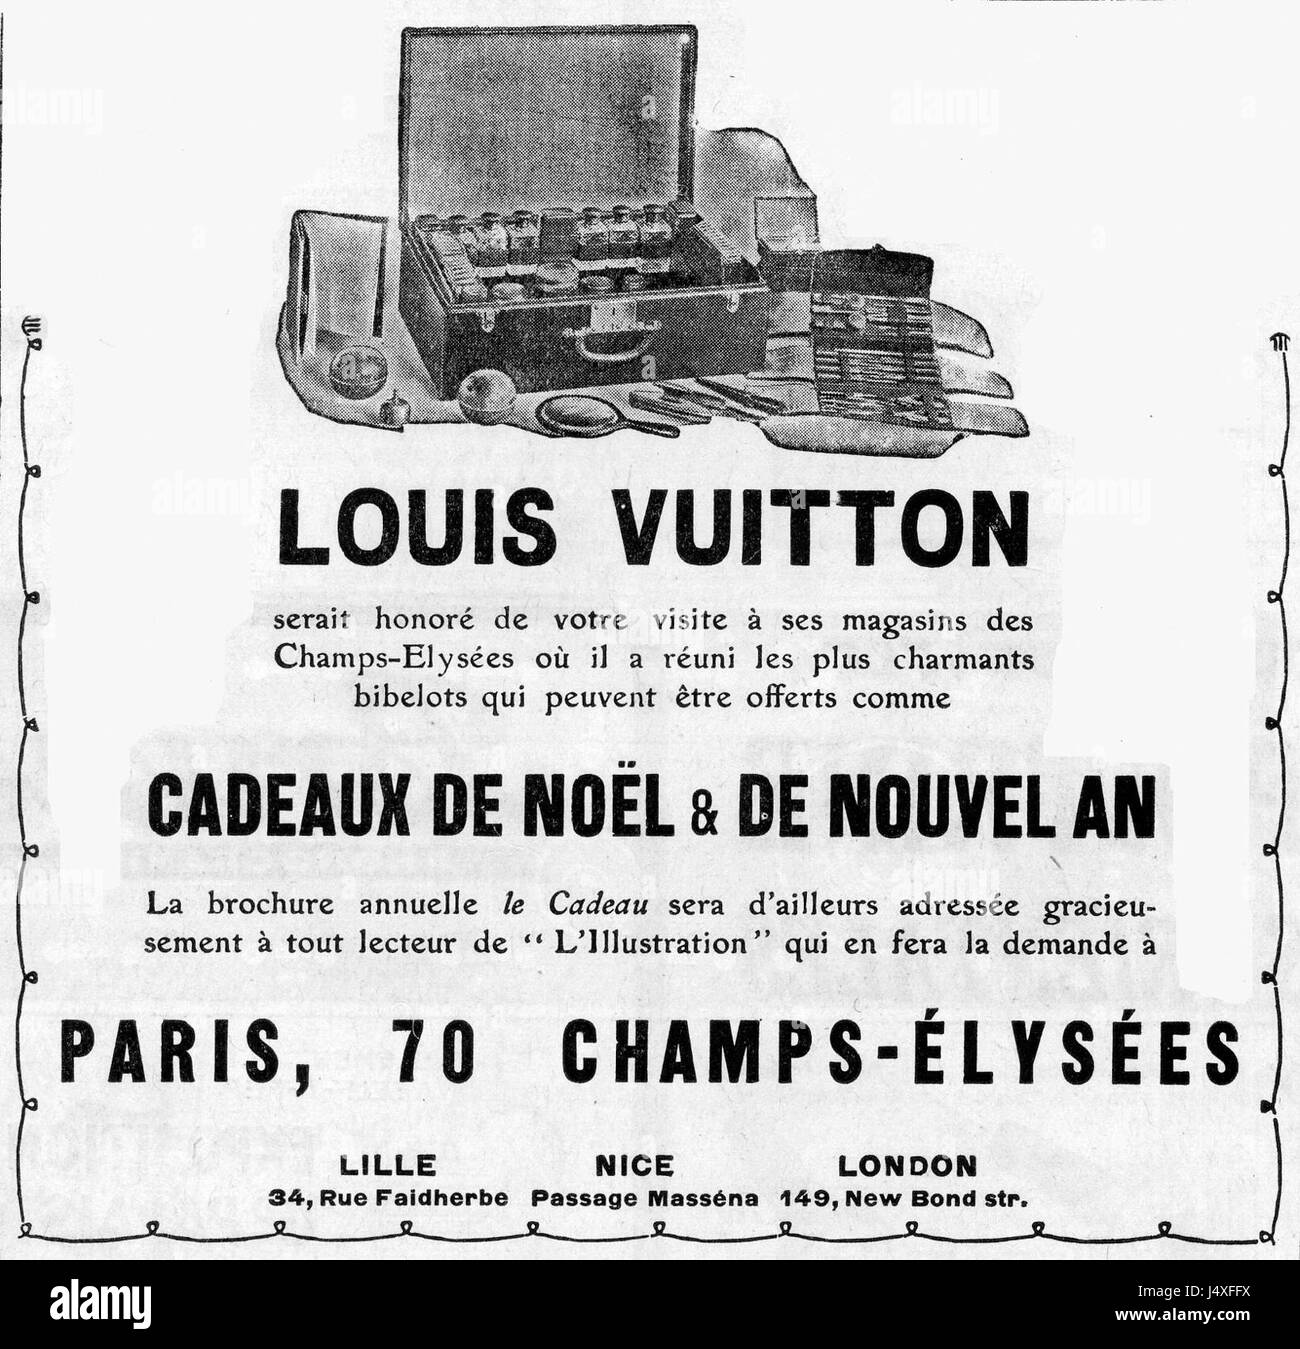 Louis Vuitton Paris 70 Champs Elysees Framed On Paper Graphic Art